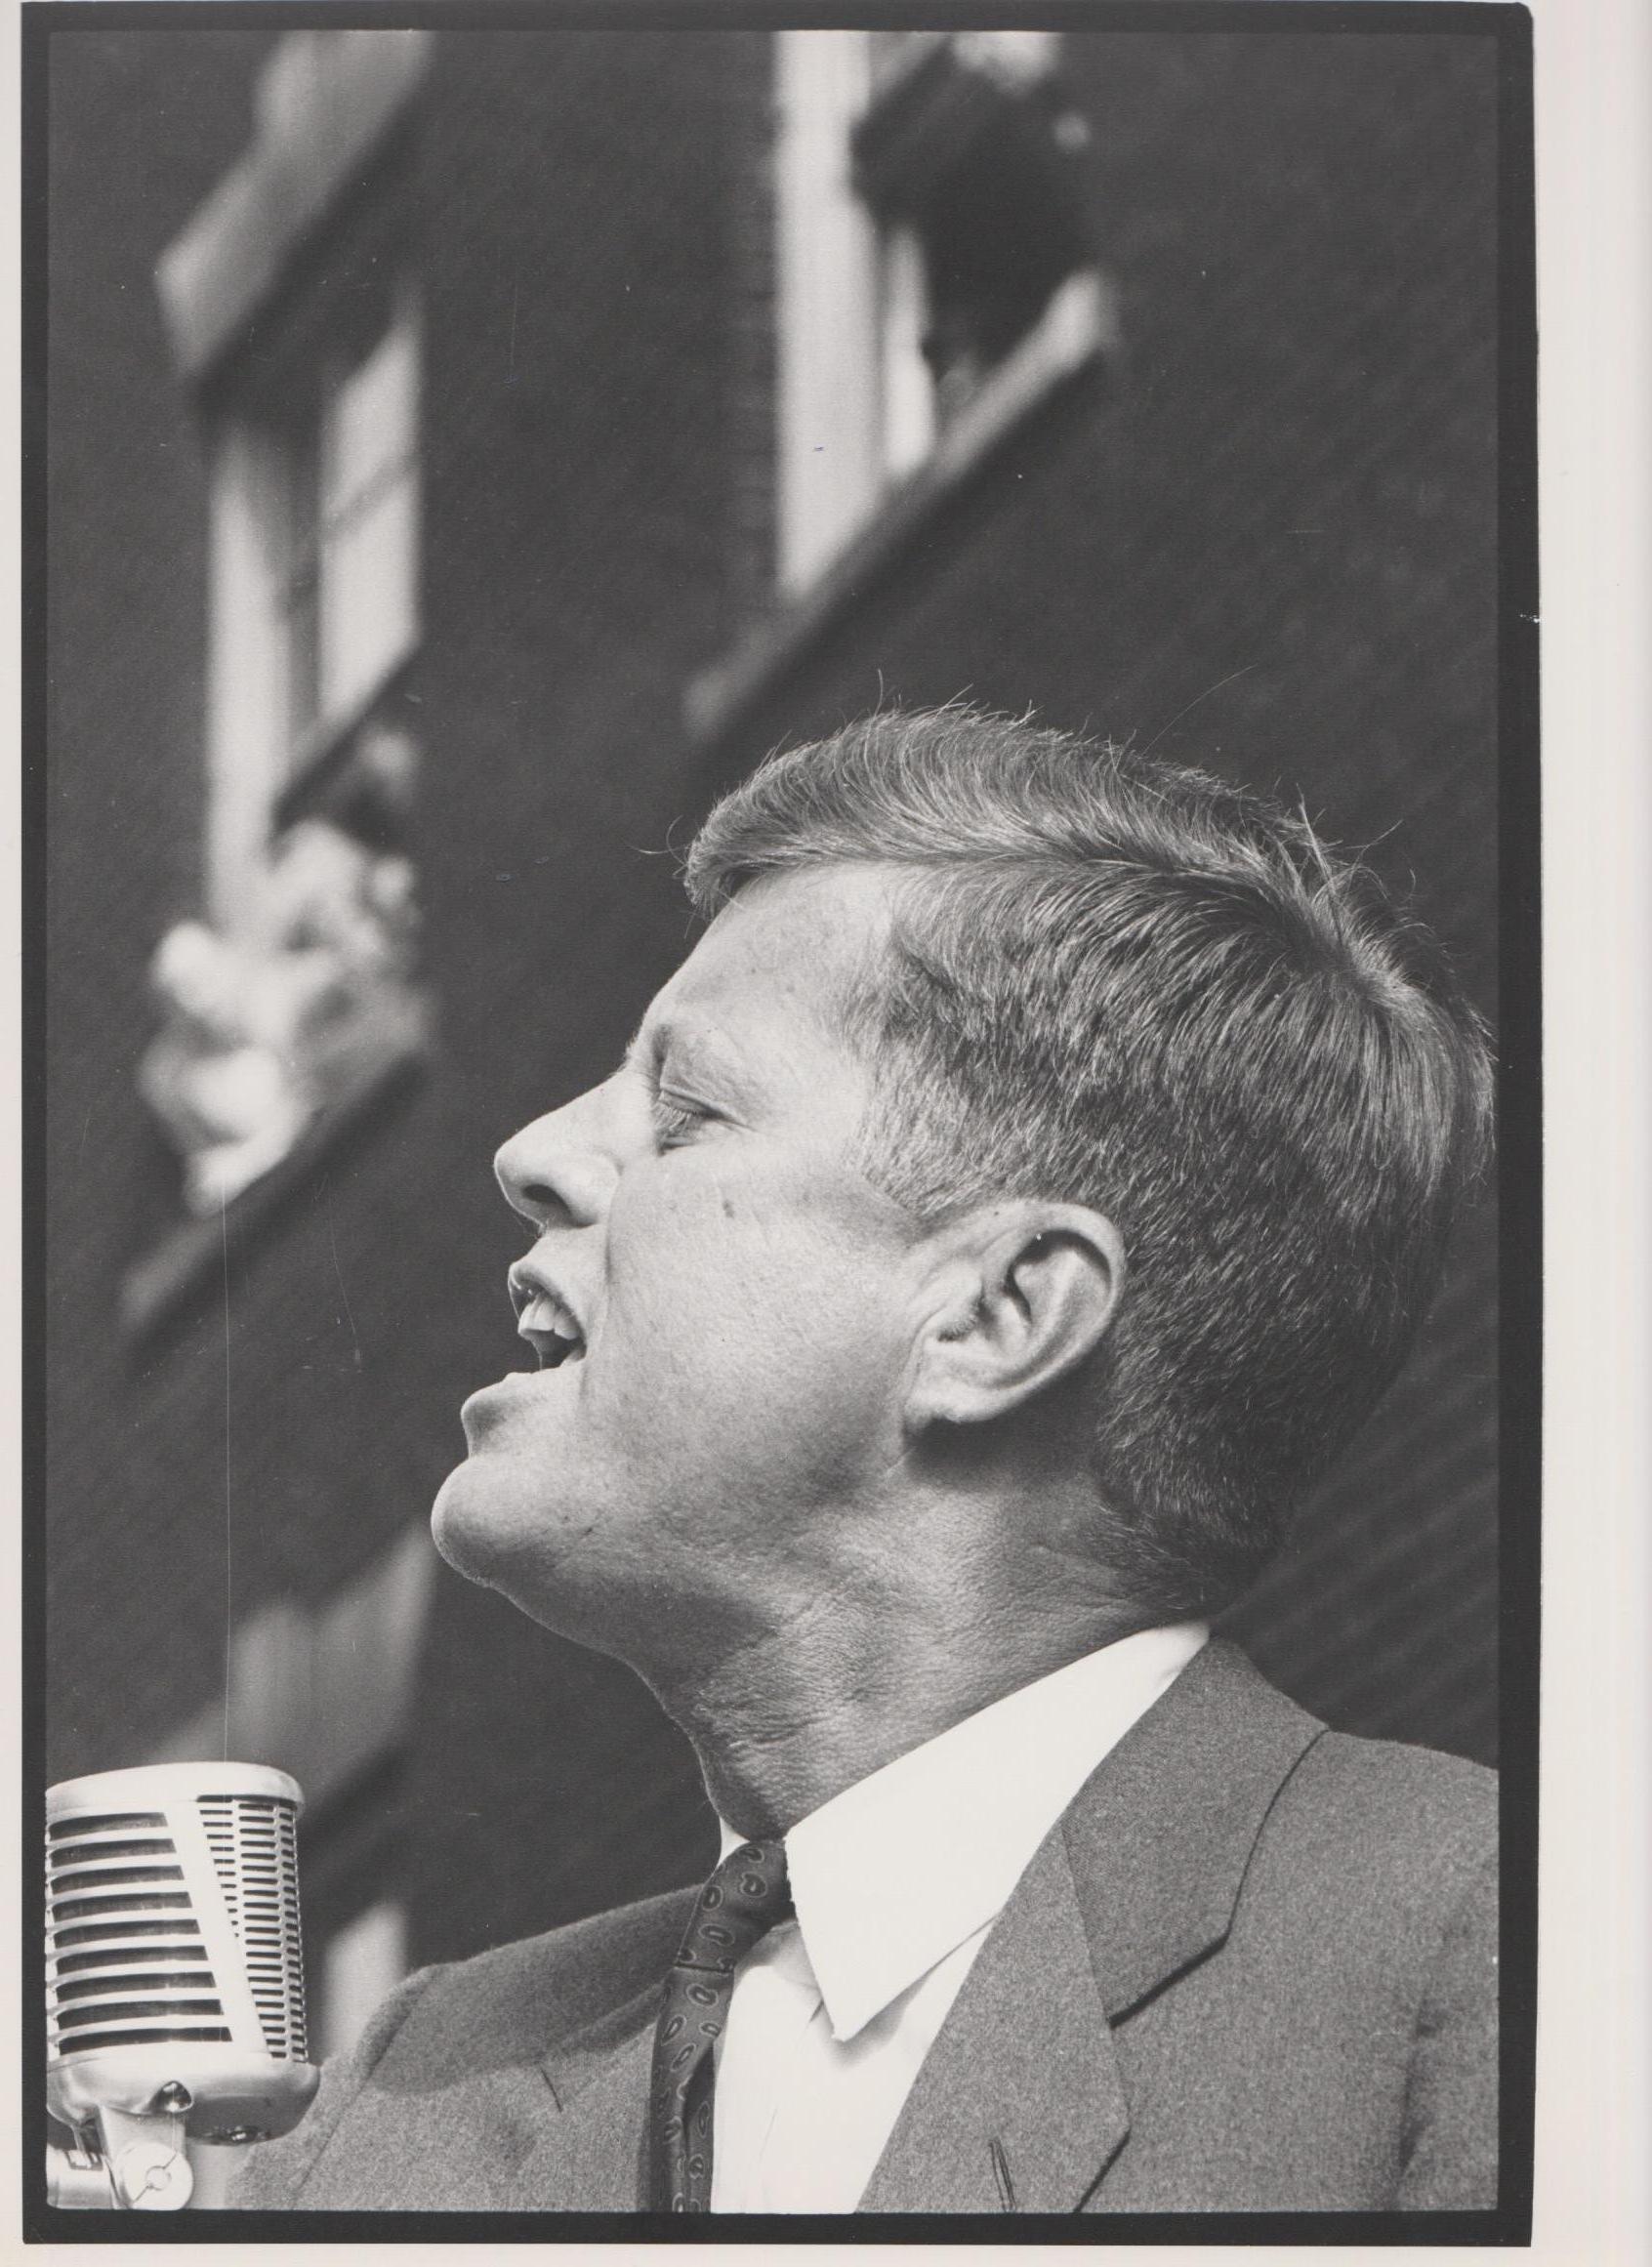 Il discorso di JFK - Campagna elettorale di John F. Kennedy 1960